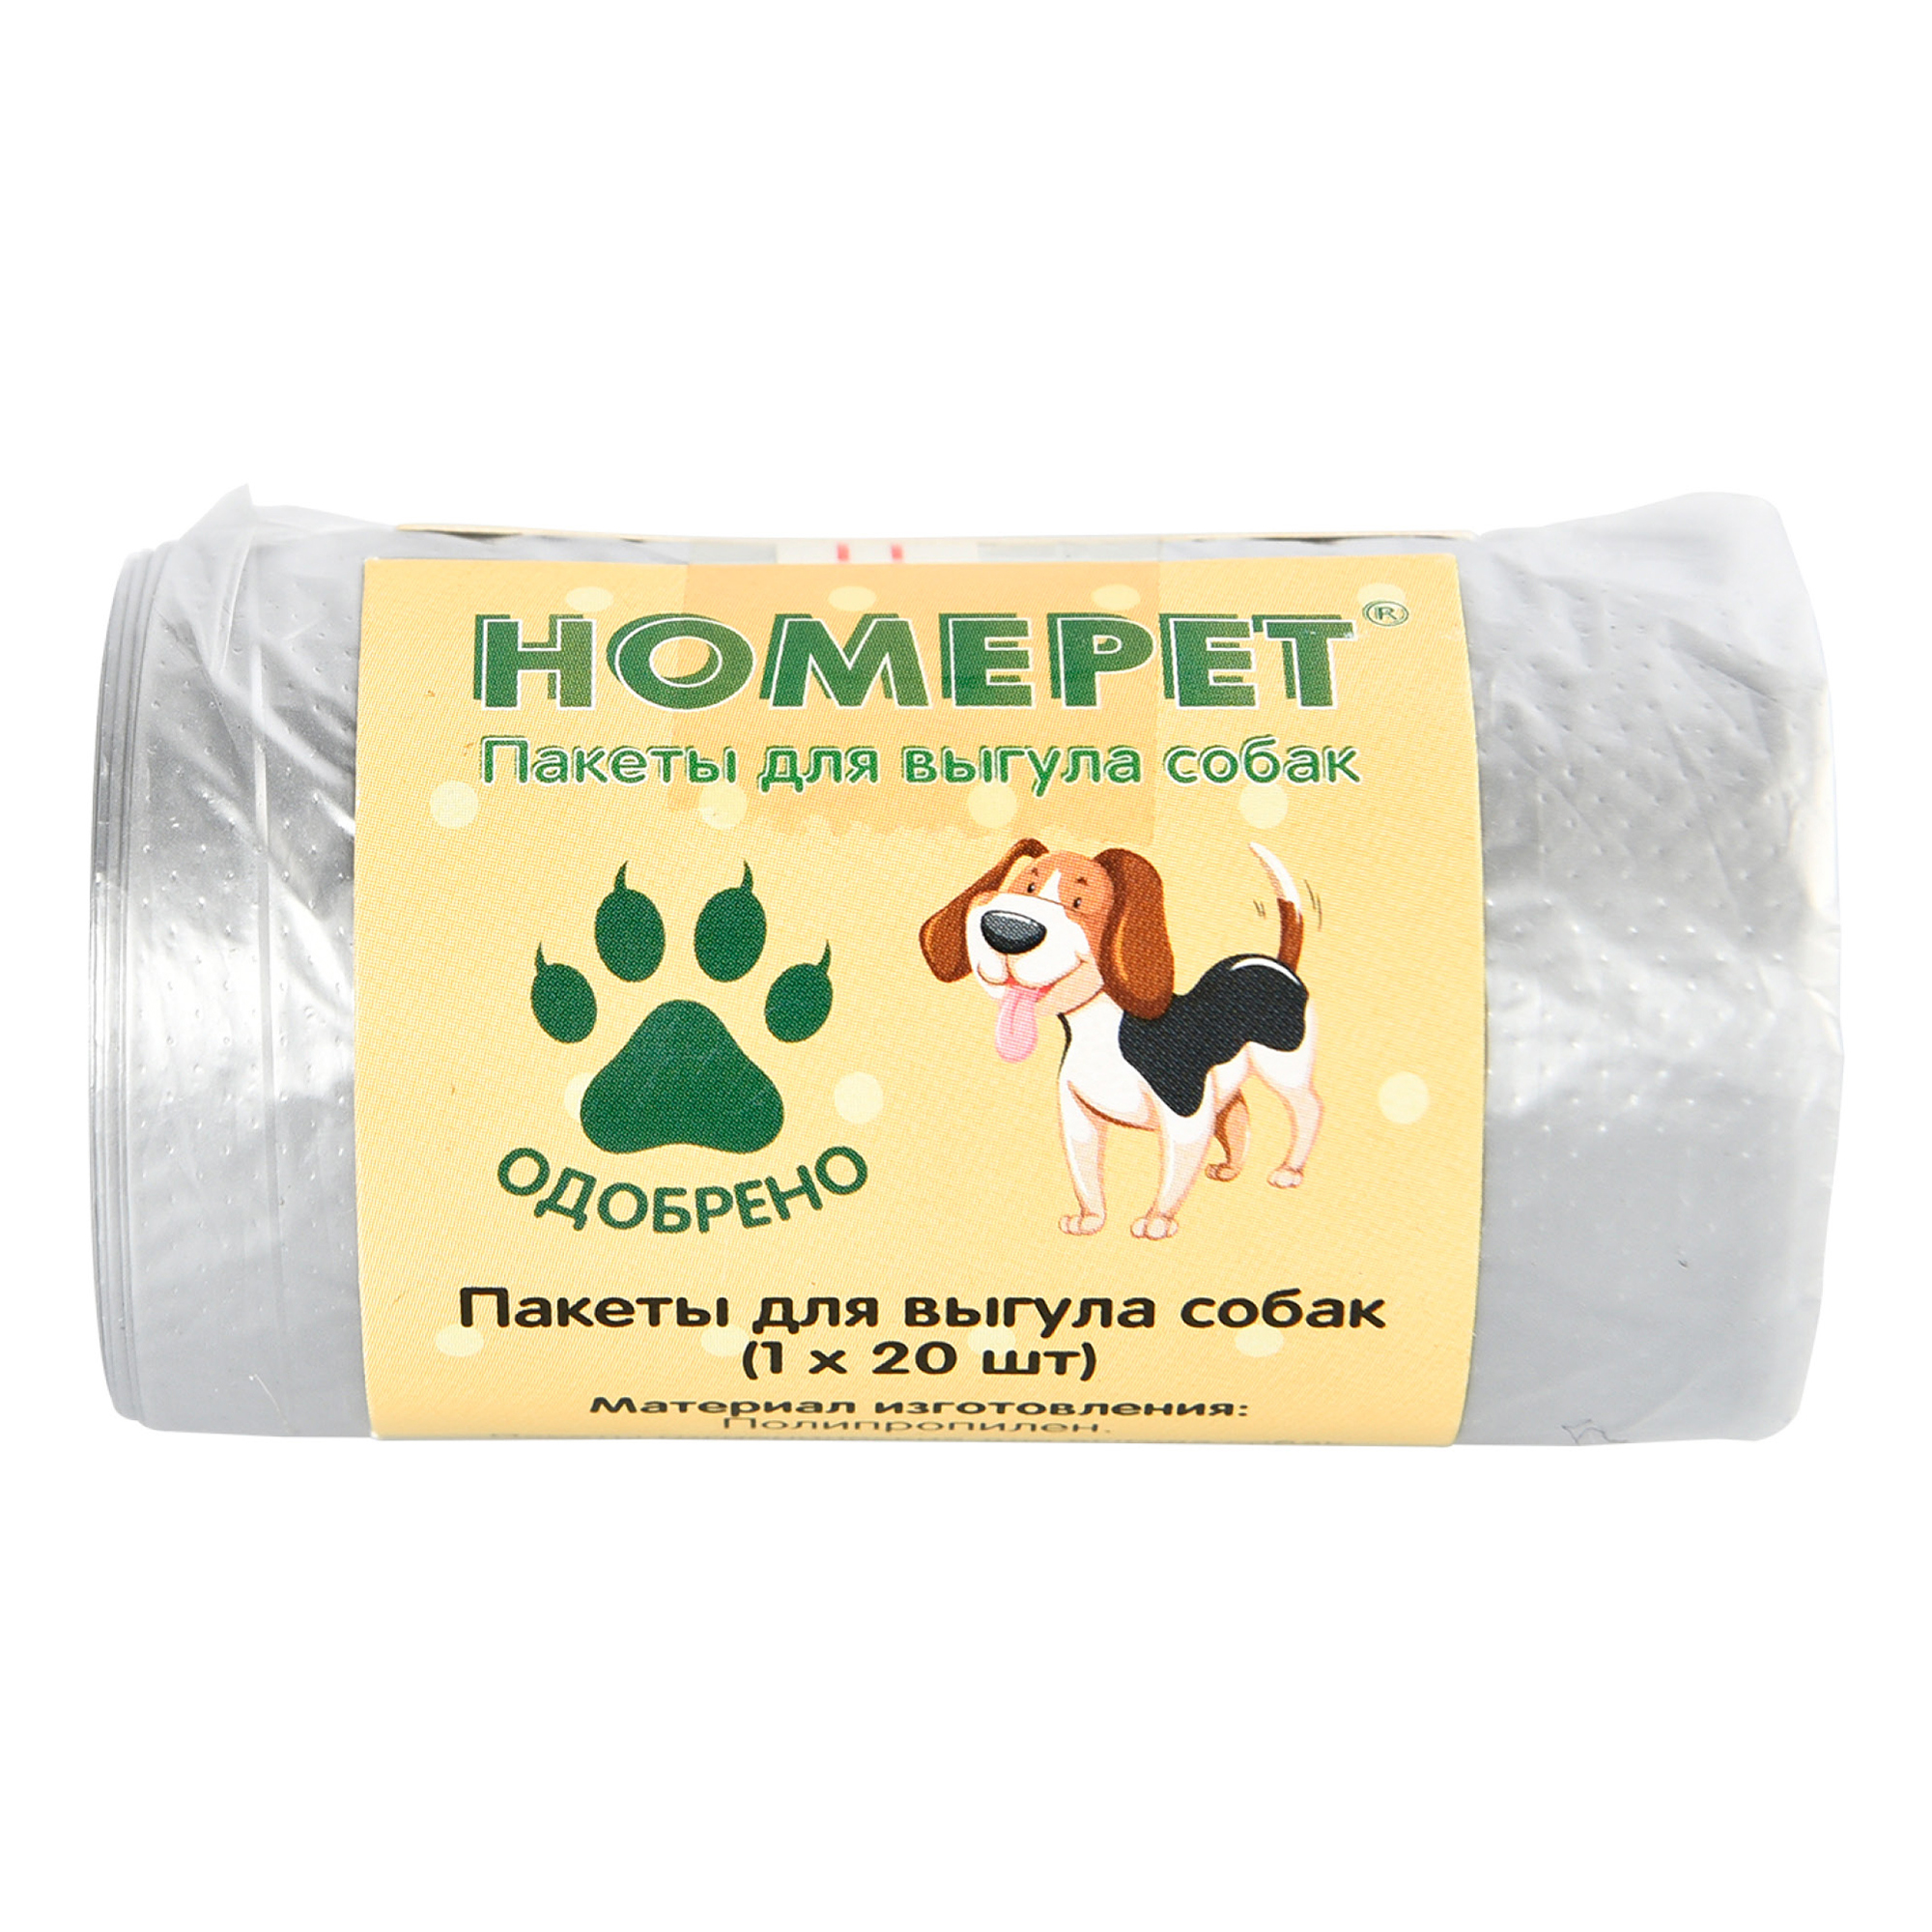 Пакеты для выгула собак Homepet 20 шт